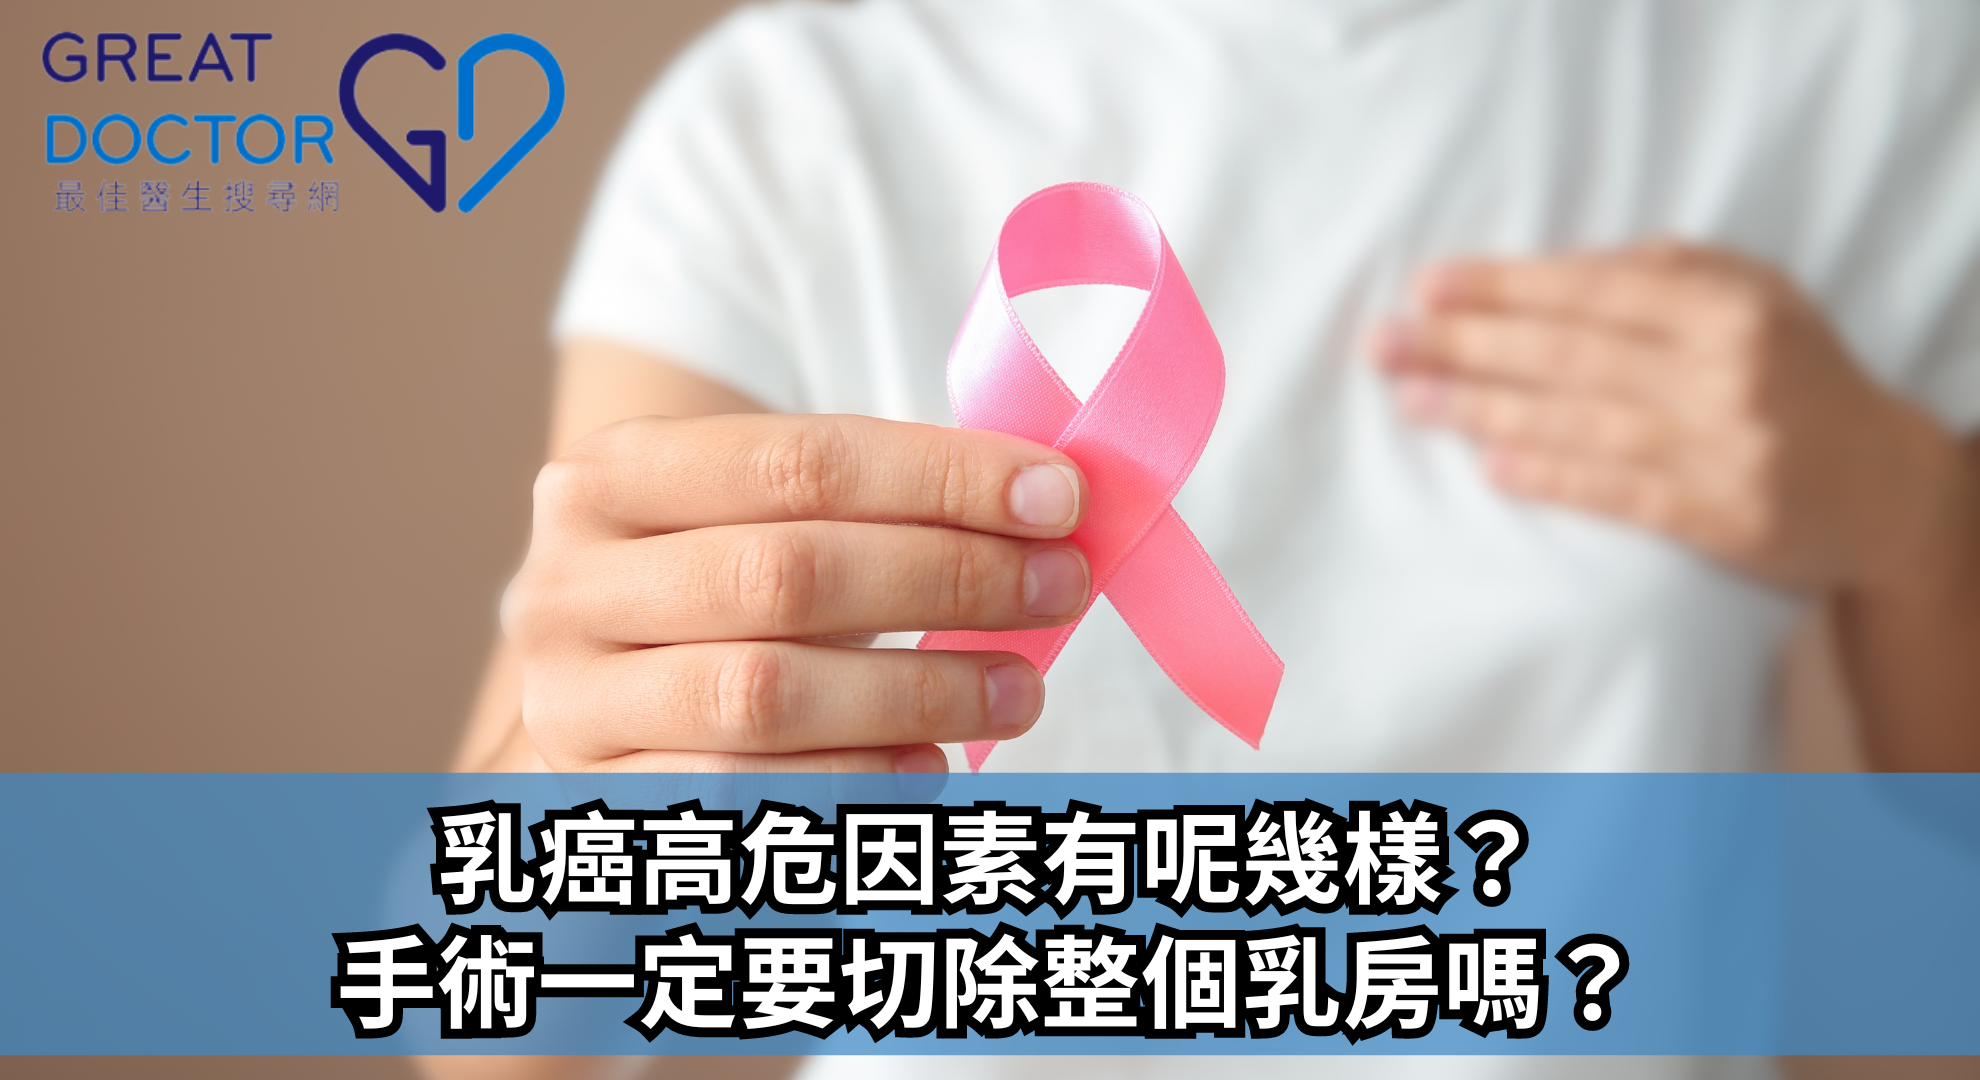 乳癌高危因素有呢幾樣？手術一定要切除整個乳房嗎？